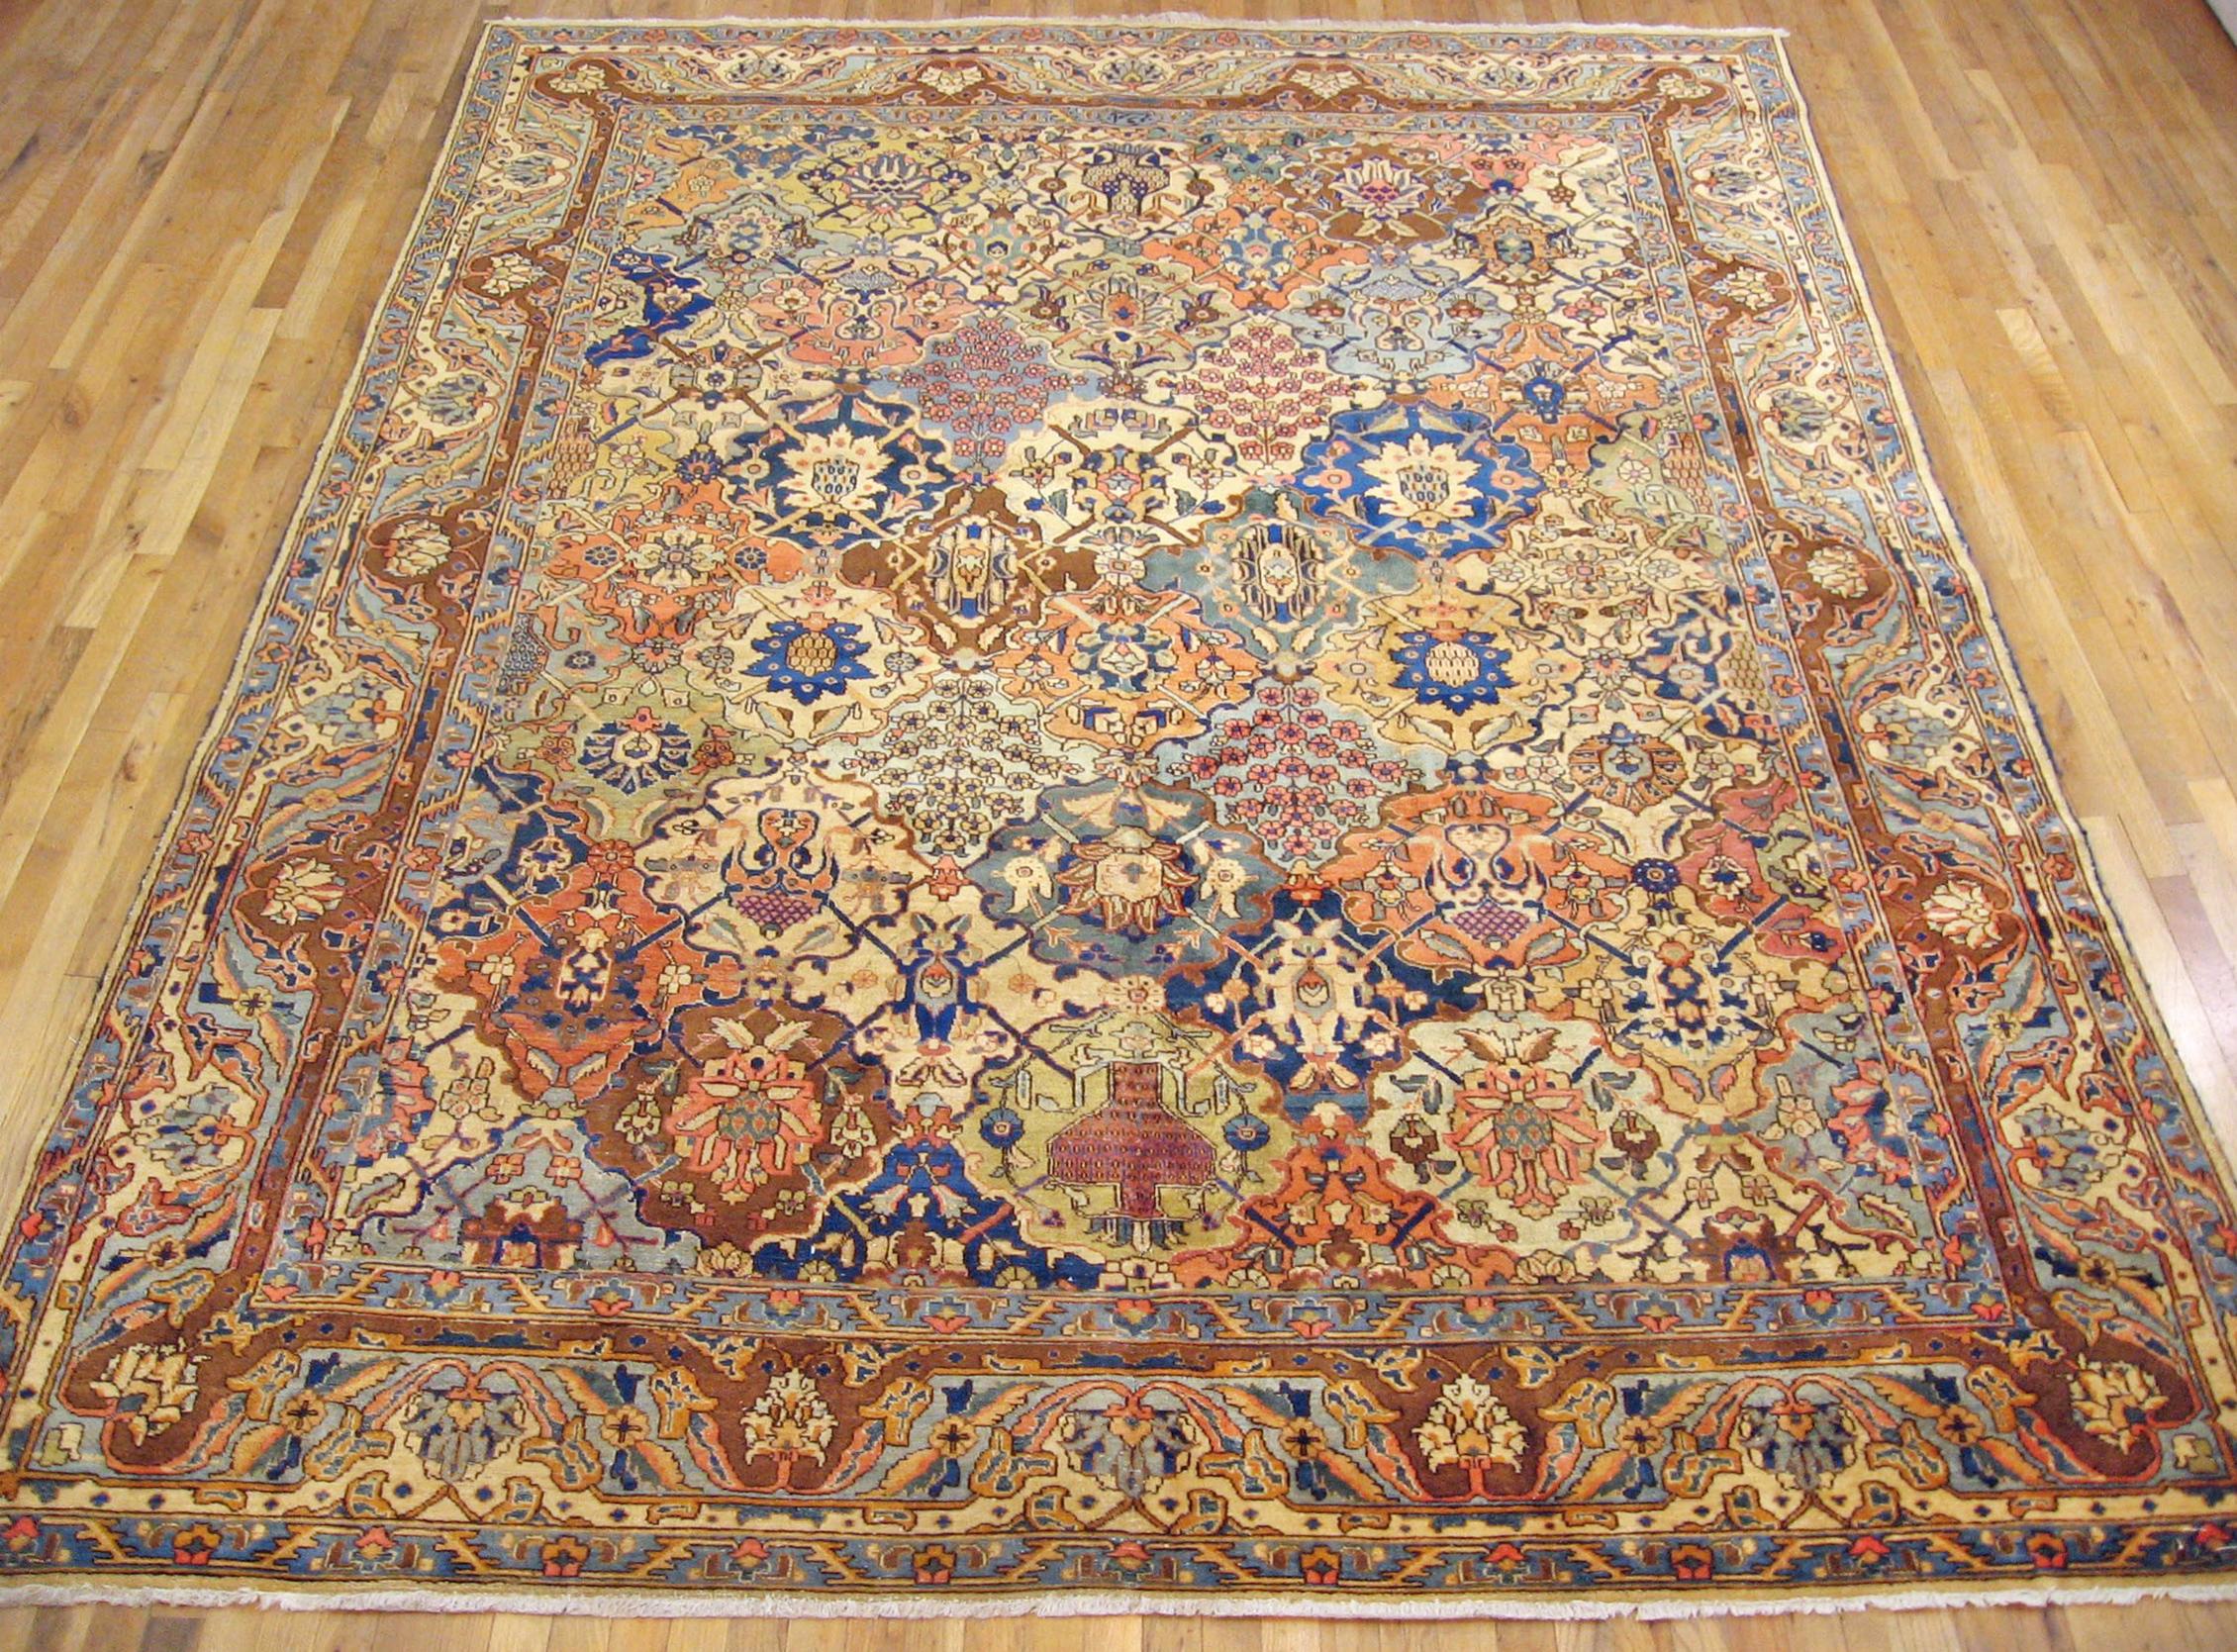 Antique Persian Tabriz oriental carpet, circa 1920, room sized

An antique Persian Tabriz oriental carpet, circa 1920. Size: 11'0